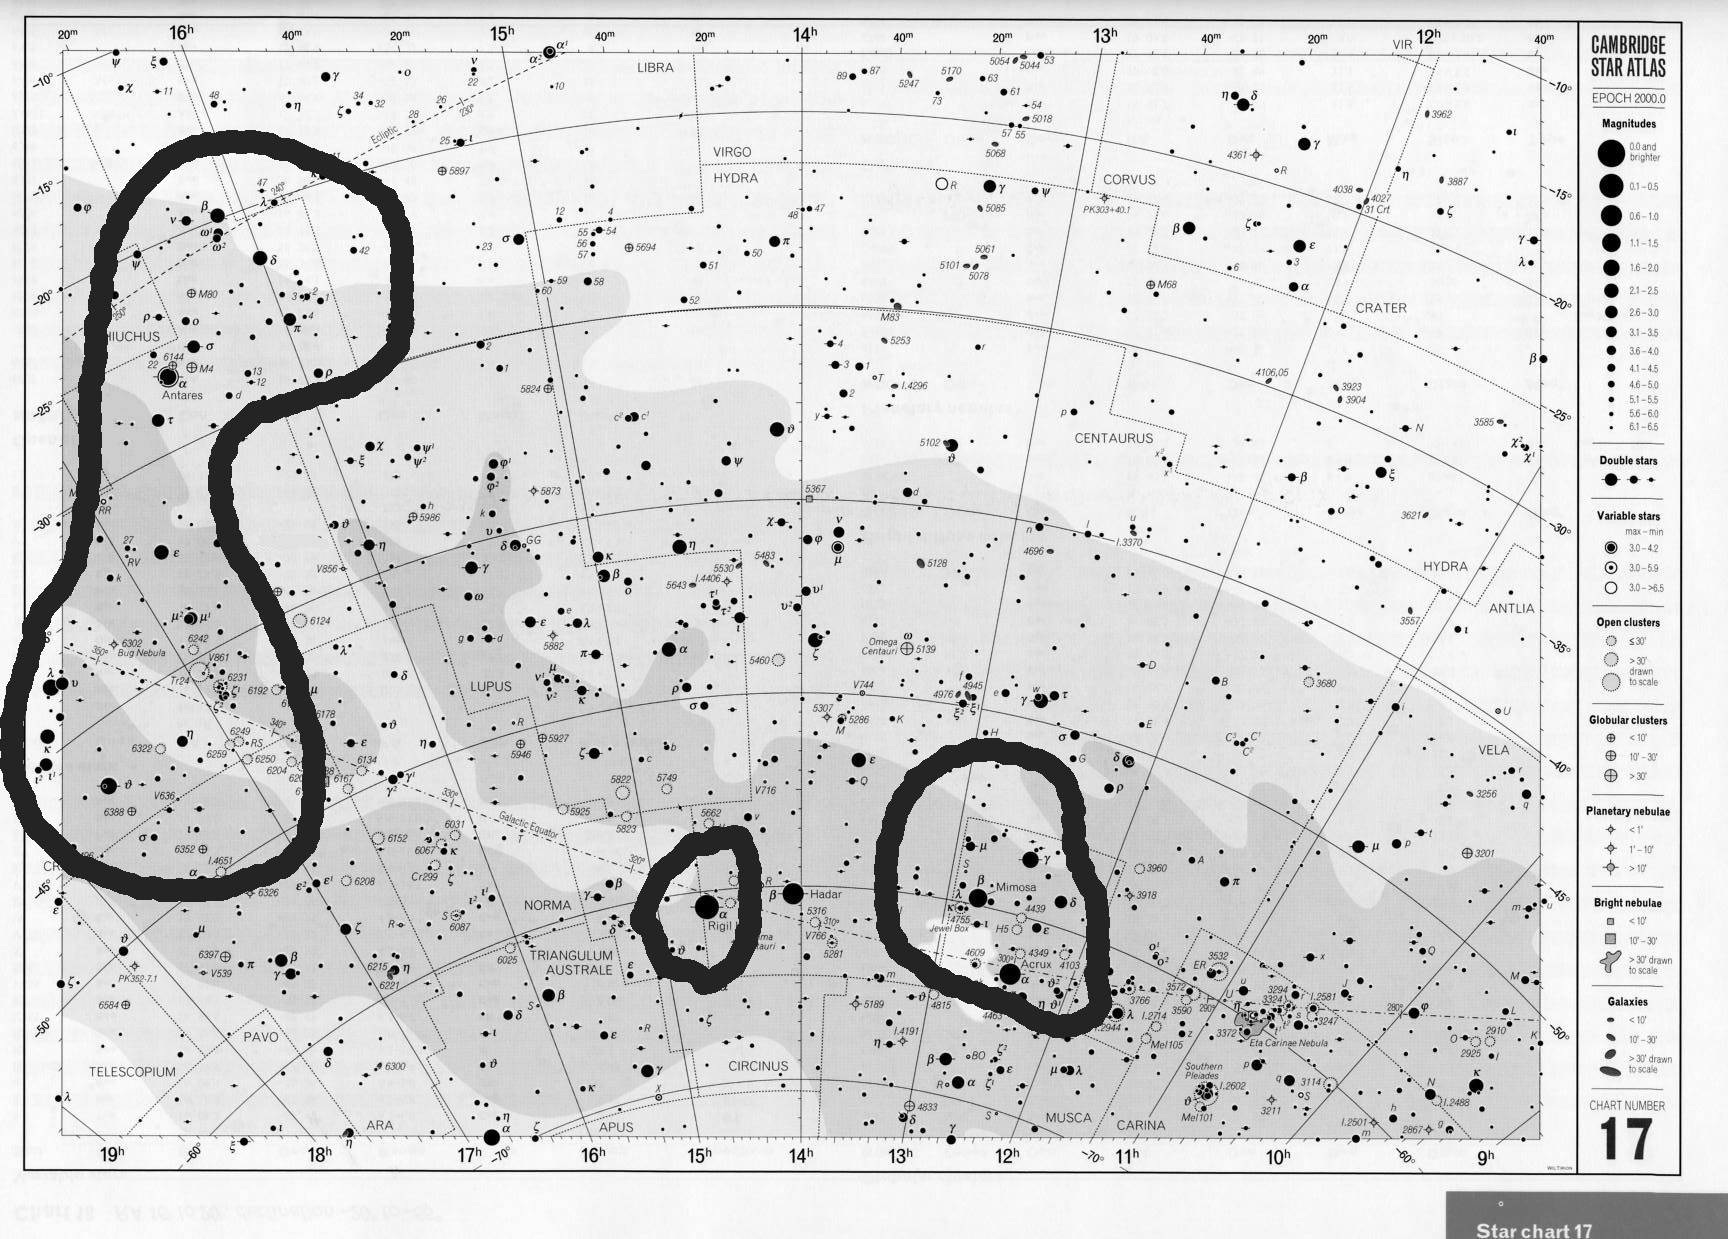 3. (20%) En el siguiente mapa, identifica: a) a constelación Cruz del Sur b) a estrella alfa centauro